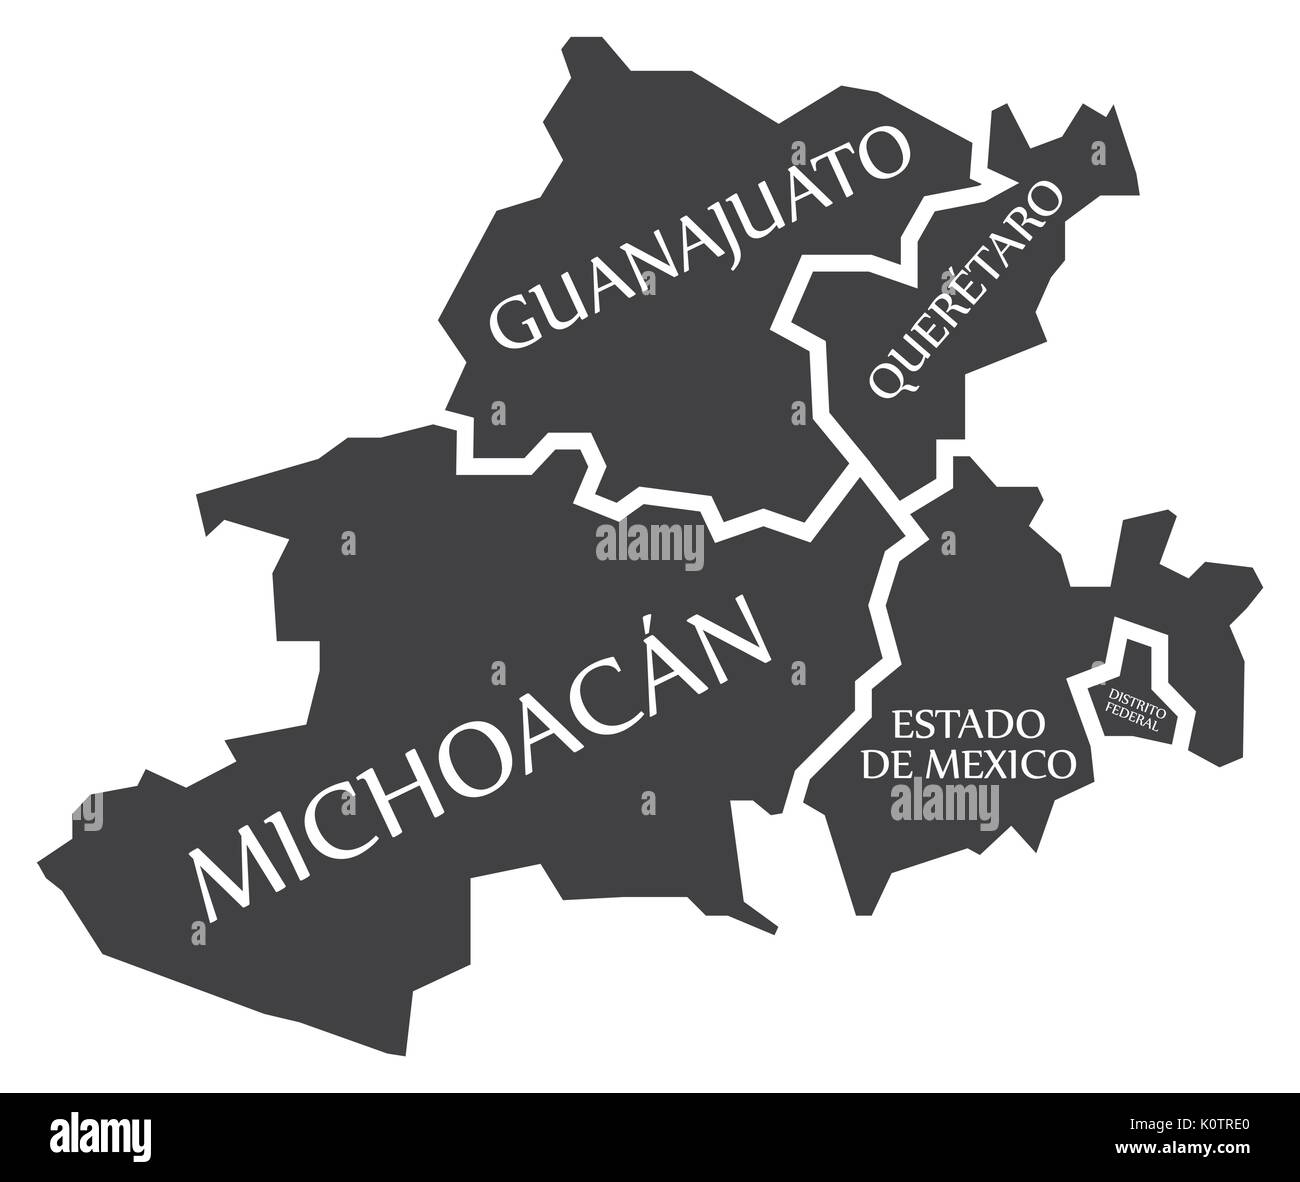 Guanajuato - Queretaro - Michoacan - Estado de Mexico - Distrito Federal Map Mexico illustration Stock Vector